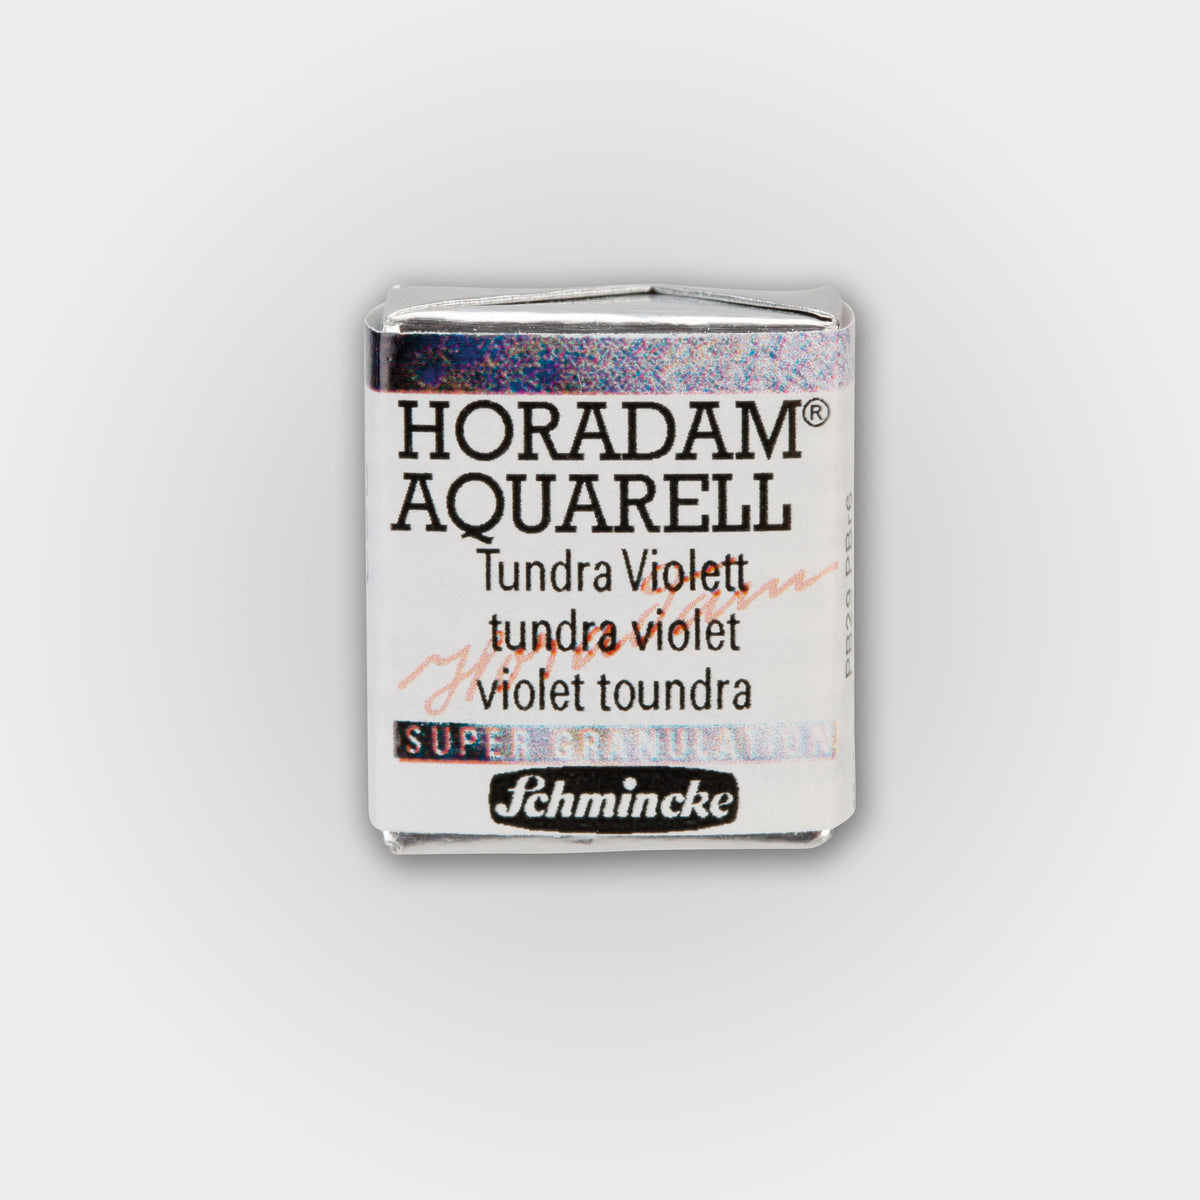 Schmincke Horadam® Supergranulierung Halbschale Tundraviolett